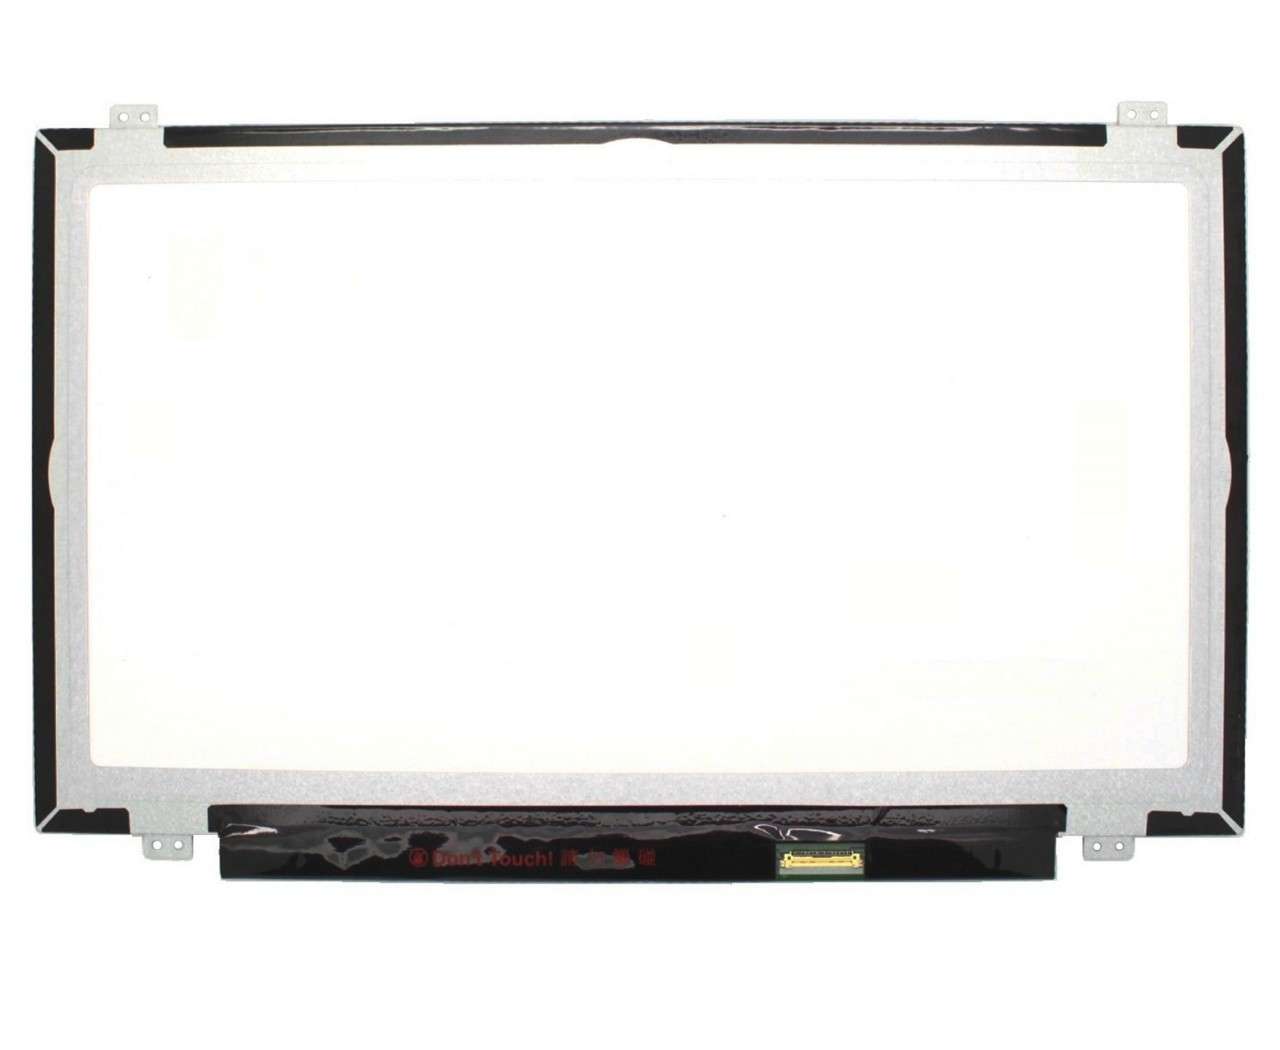 Display laptop Asus G46VW Ecran 14.0 1920×1080 30 pini eDP imagine 2021 ASUS